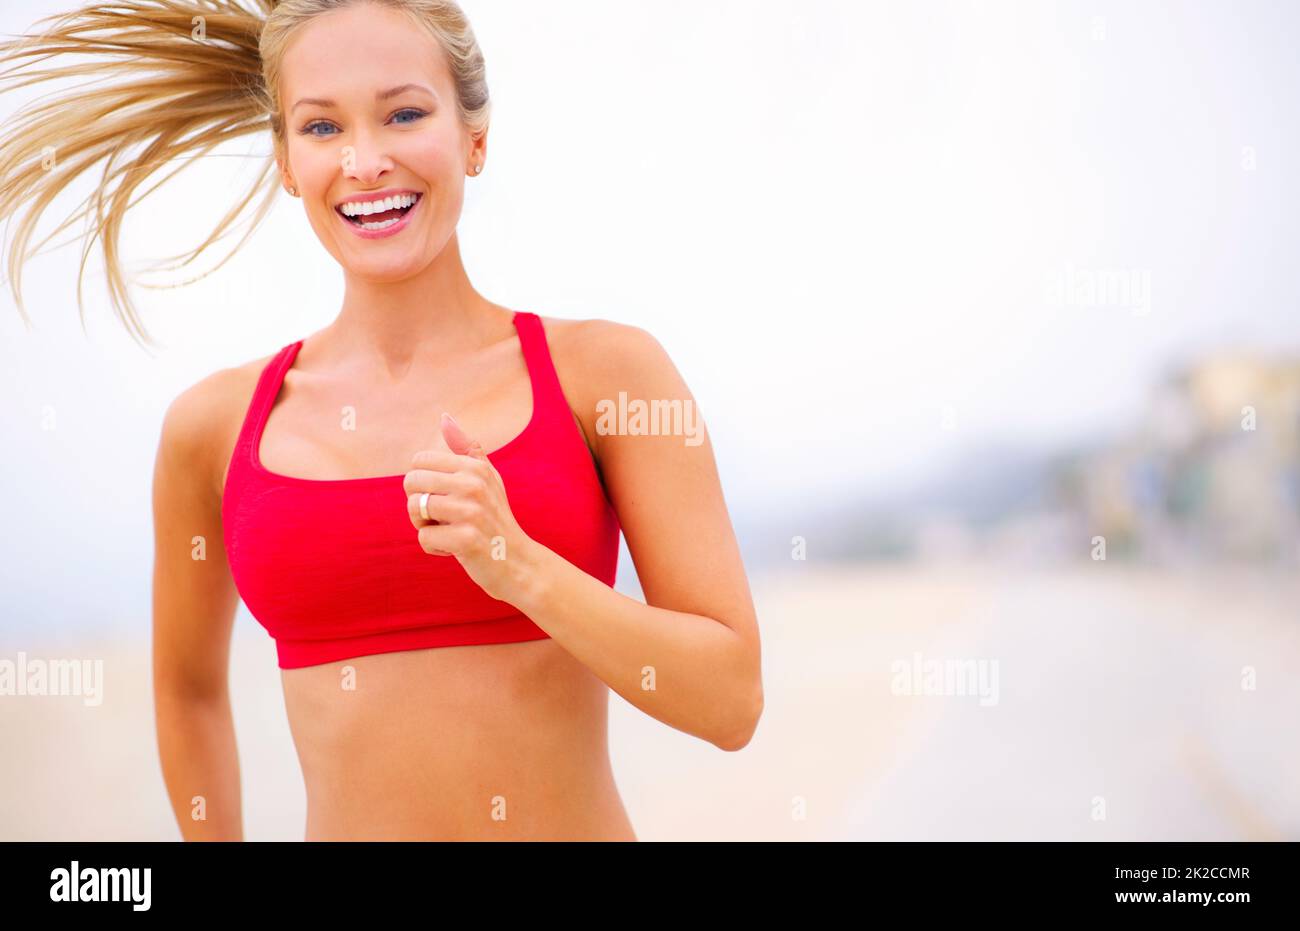 Laufen ist ein Lebensstil. Aufnahme einer jungen Frau, die in der Nähe des Strandes joggt. Stockfoto